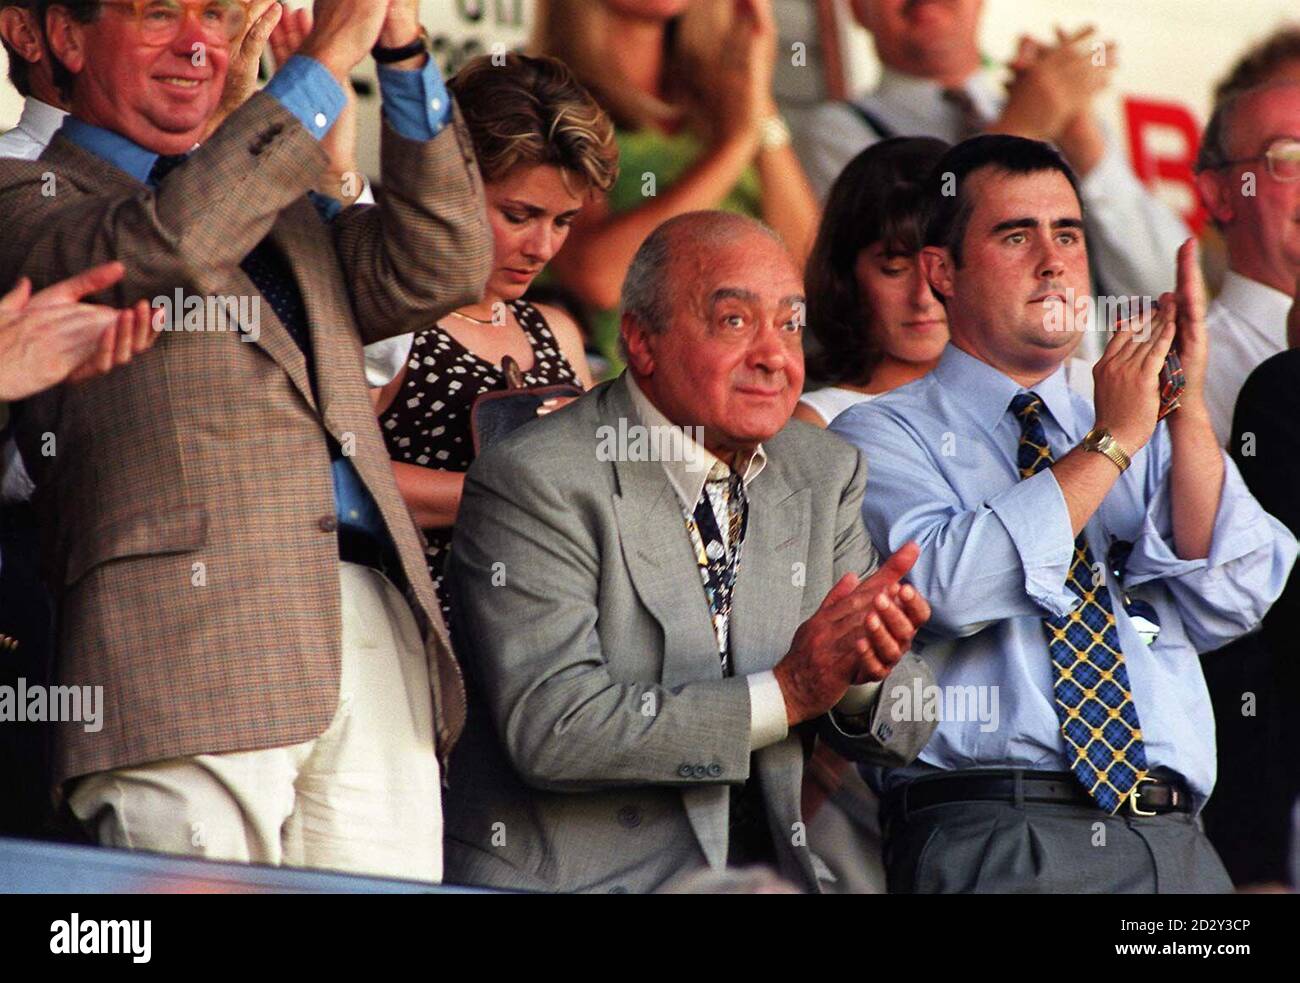 Der Milliardär Harrods-Chef Mohamed Al Fayed schaut sich heute (Samstag) eifrig den Fulham Football Club an - seine neueste Akquisition - für das erste Spiel der Saison. Herr Al Fayed Senior, der Fulham in diesem Sommer für 30 Millionen gekauft hat, wurde mit lautem Jubel begrüßt, als er sich in den Tribünen des Clubs der zweiten Liga mit Unterstützern mischte. Aber es gab keine Anzeichen für den Sohn Dodi, der mit Diana, Prinzessin von Wales, in romantischer Beziehung steht. Foto von David Cepskin/PA Stockfoto